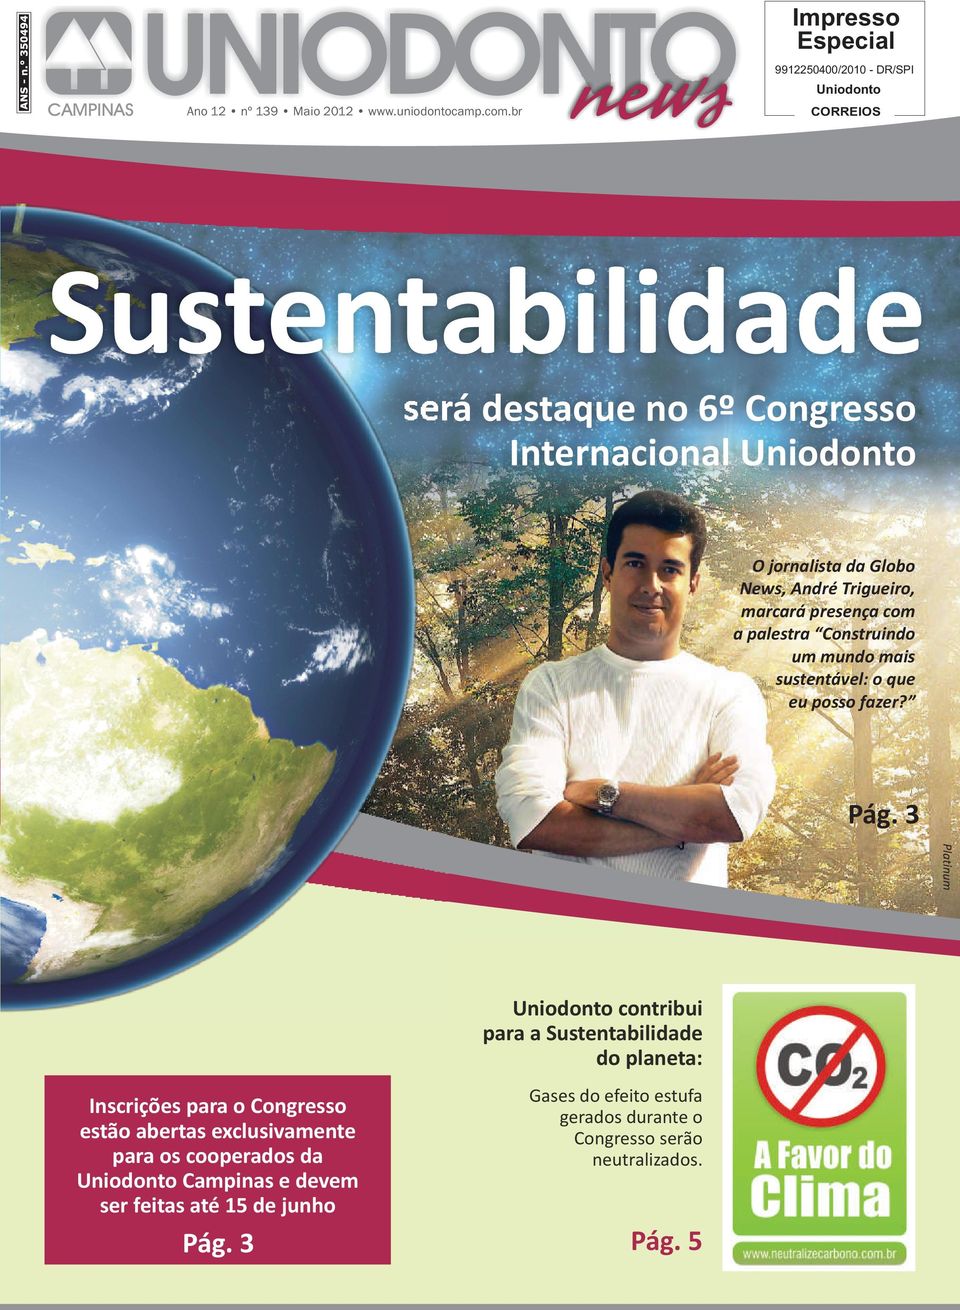 da Globo News, André Trigueiro, marcará presença com a palestra Construindo um mundo mais sustentável: o que eu posso fazer? Pág.